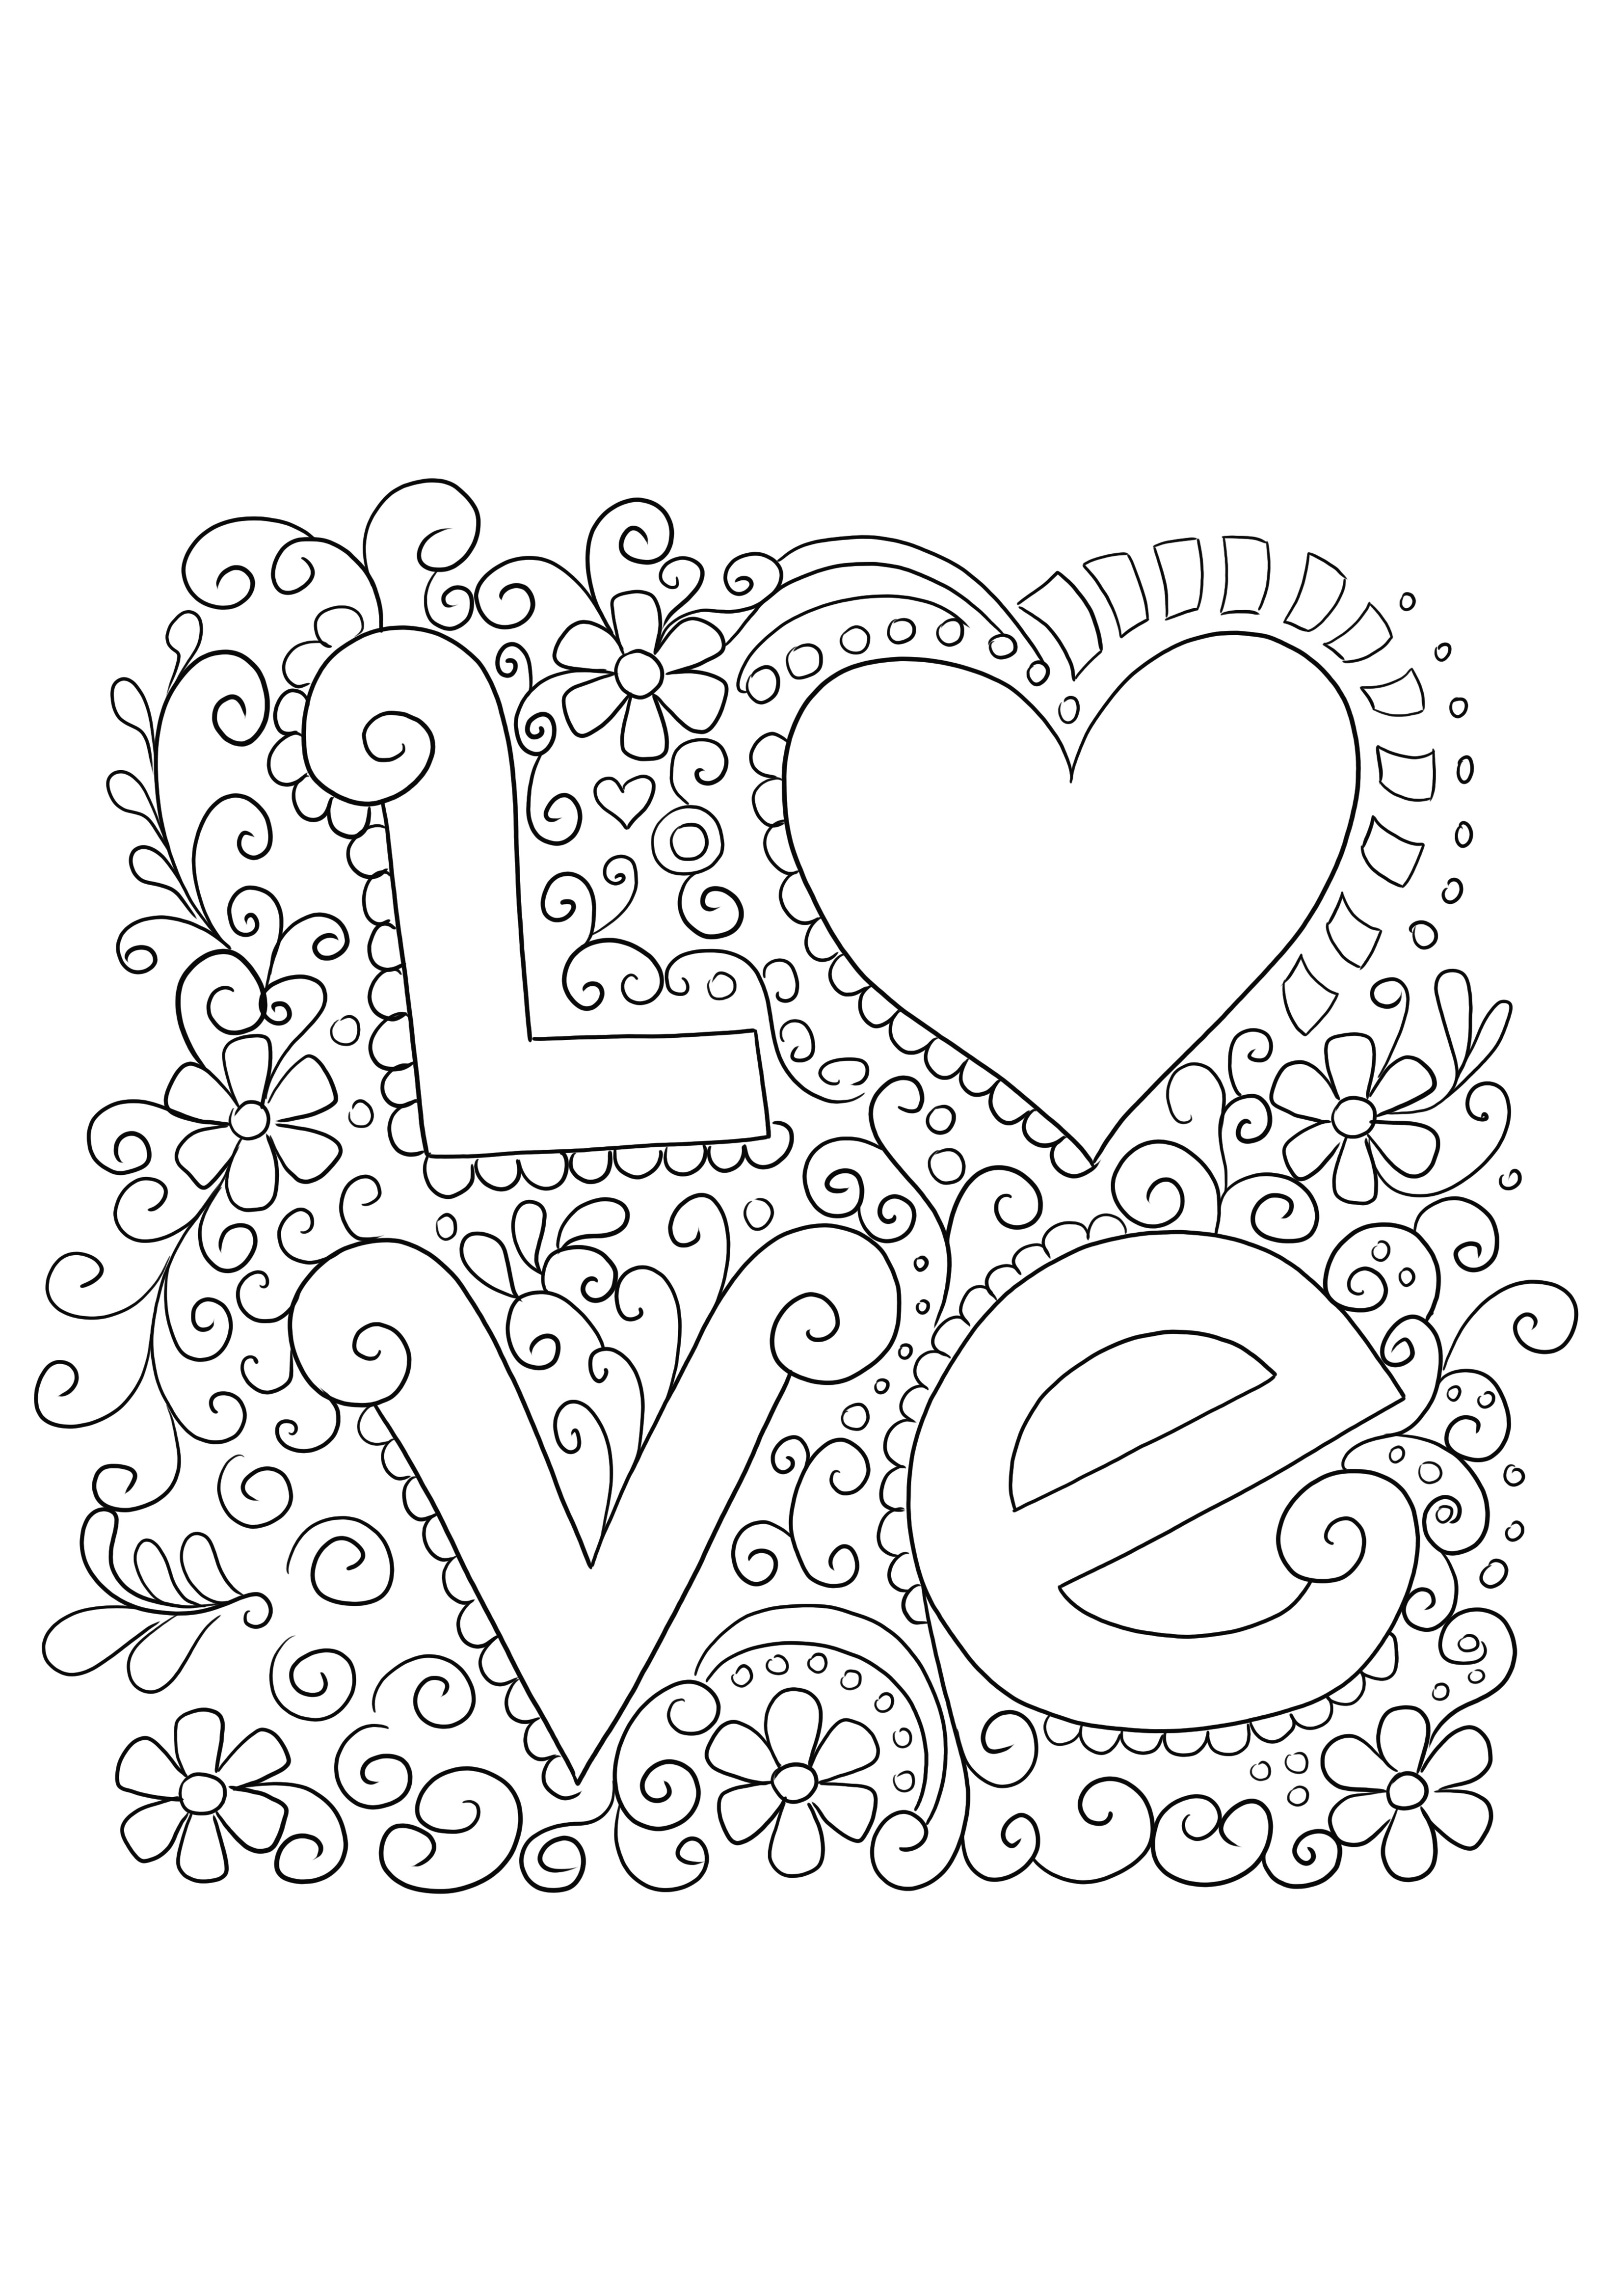 Egyszerű és ingyenes, nyomtatható szerelmi kártya, amellyel kiszínezhető és megünnepelhető a Valentin-nap